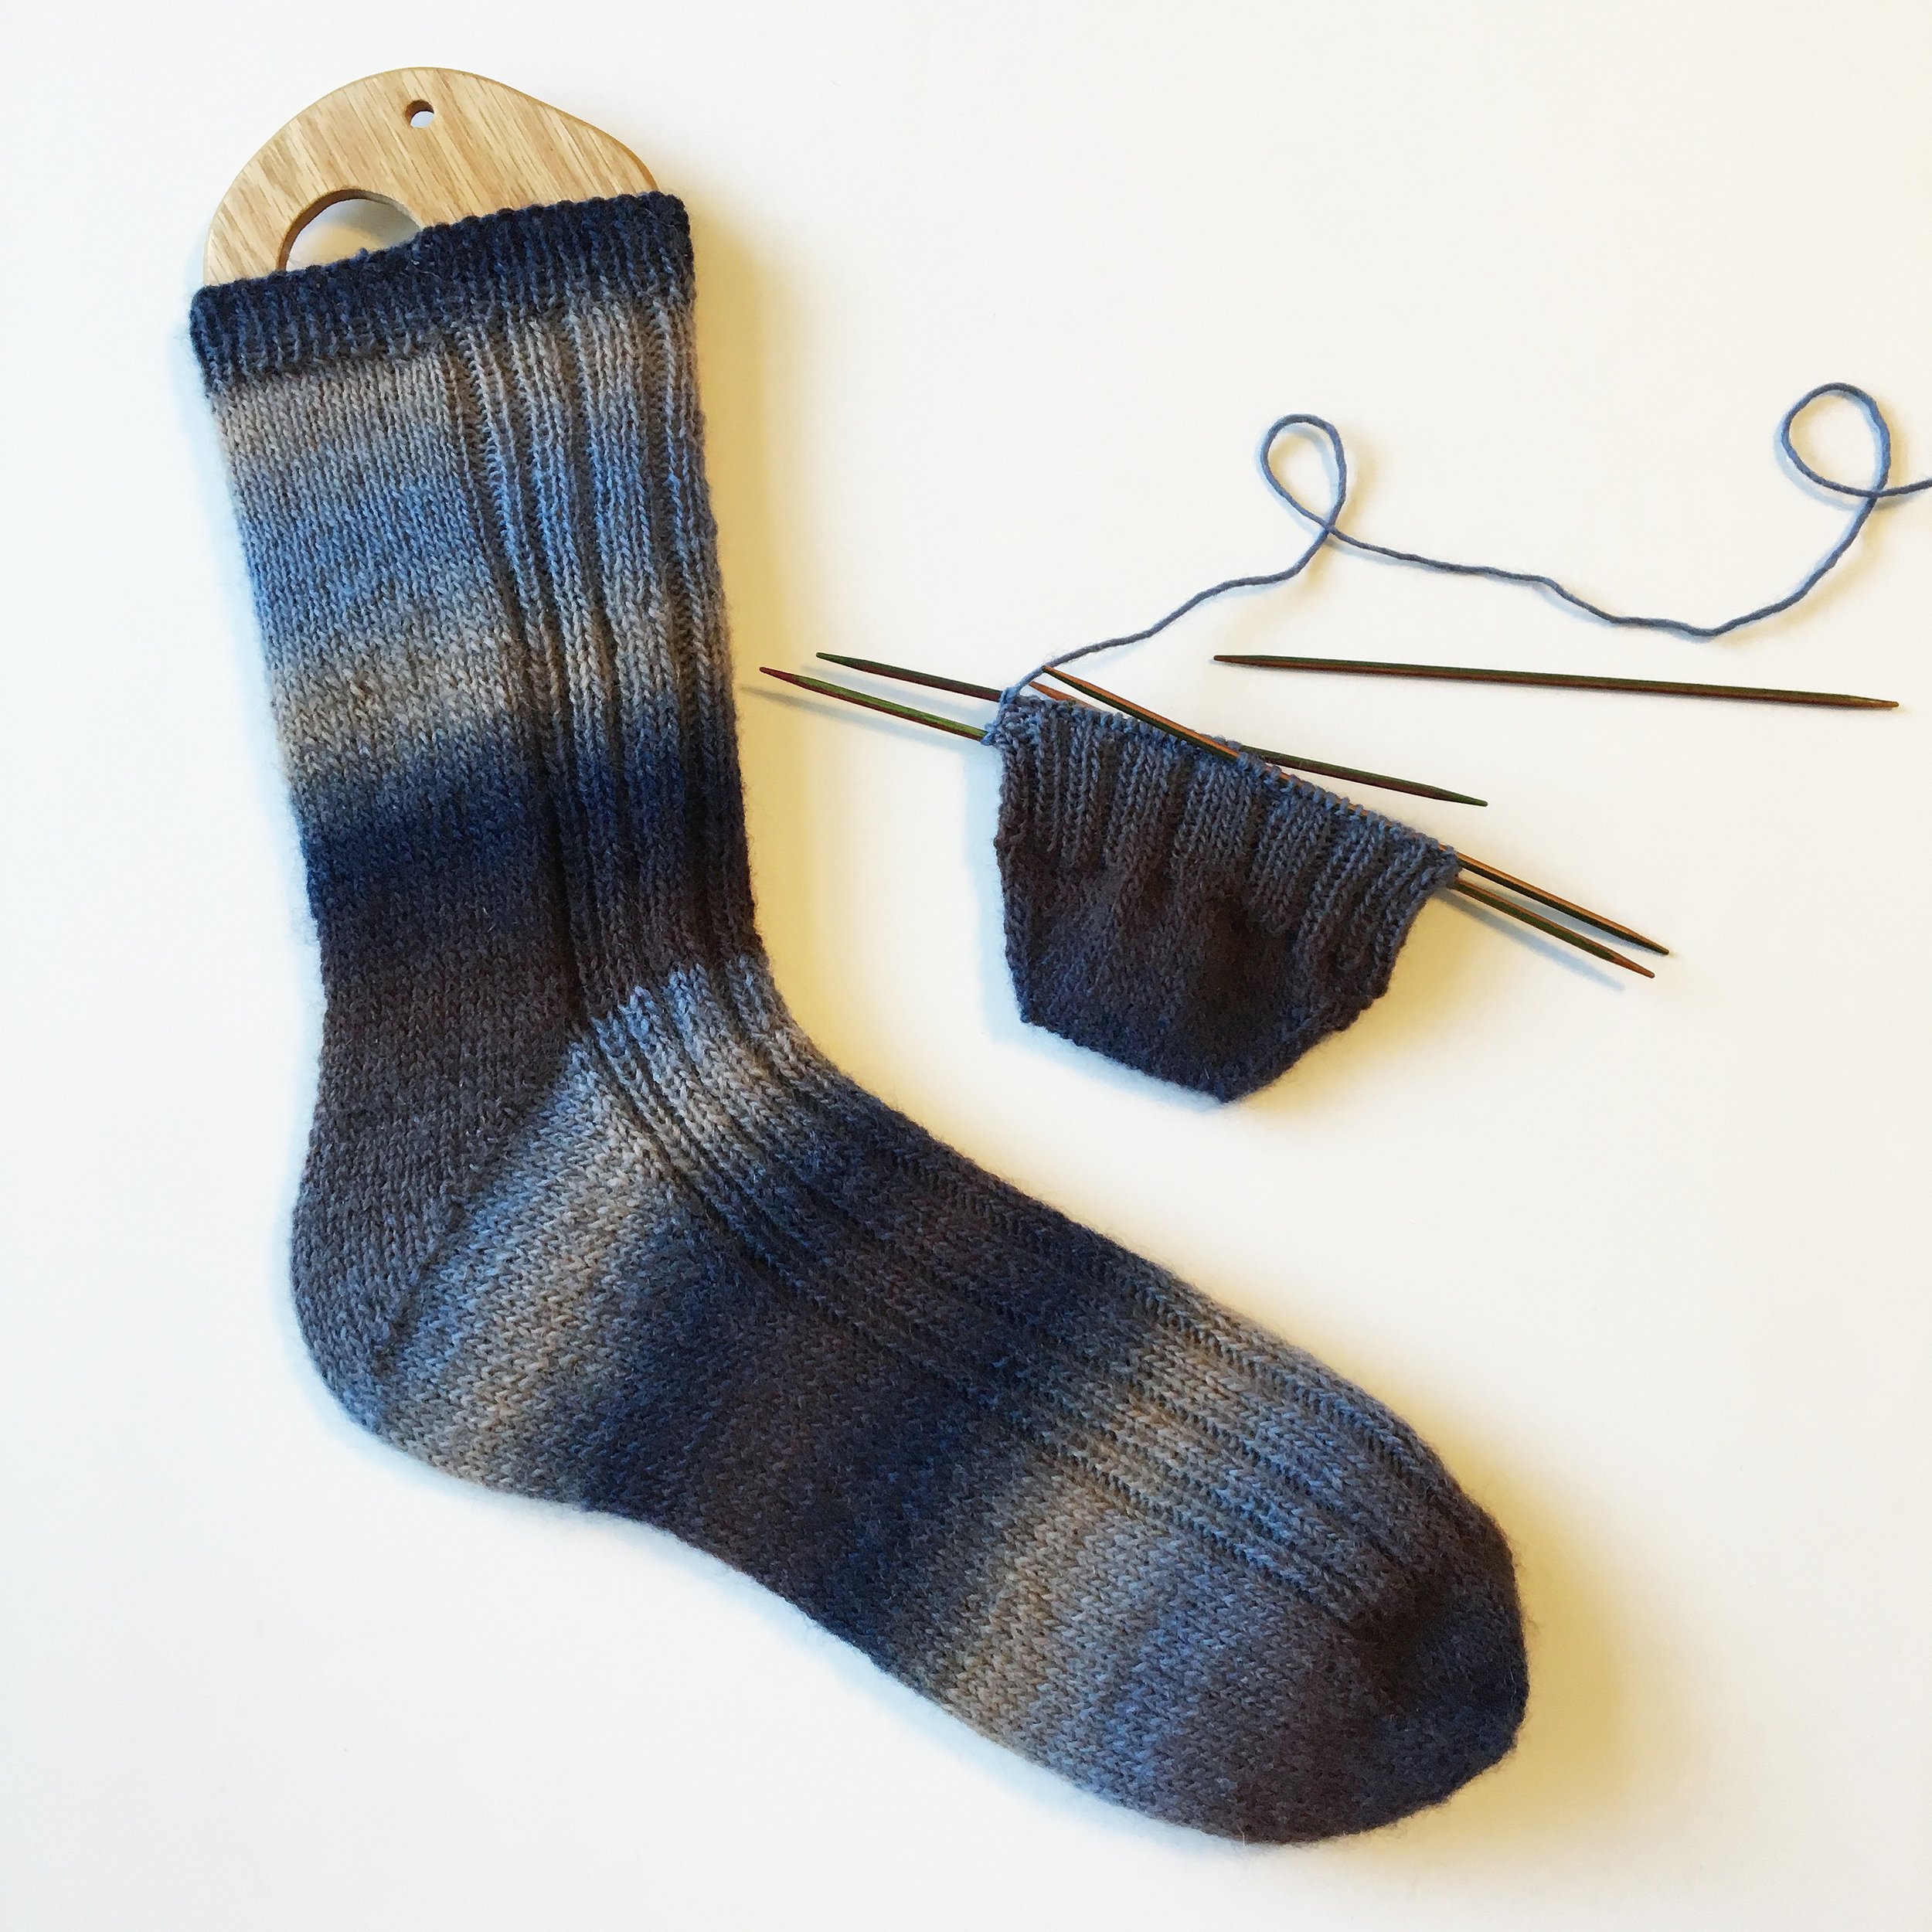 Learn to Knit Socks